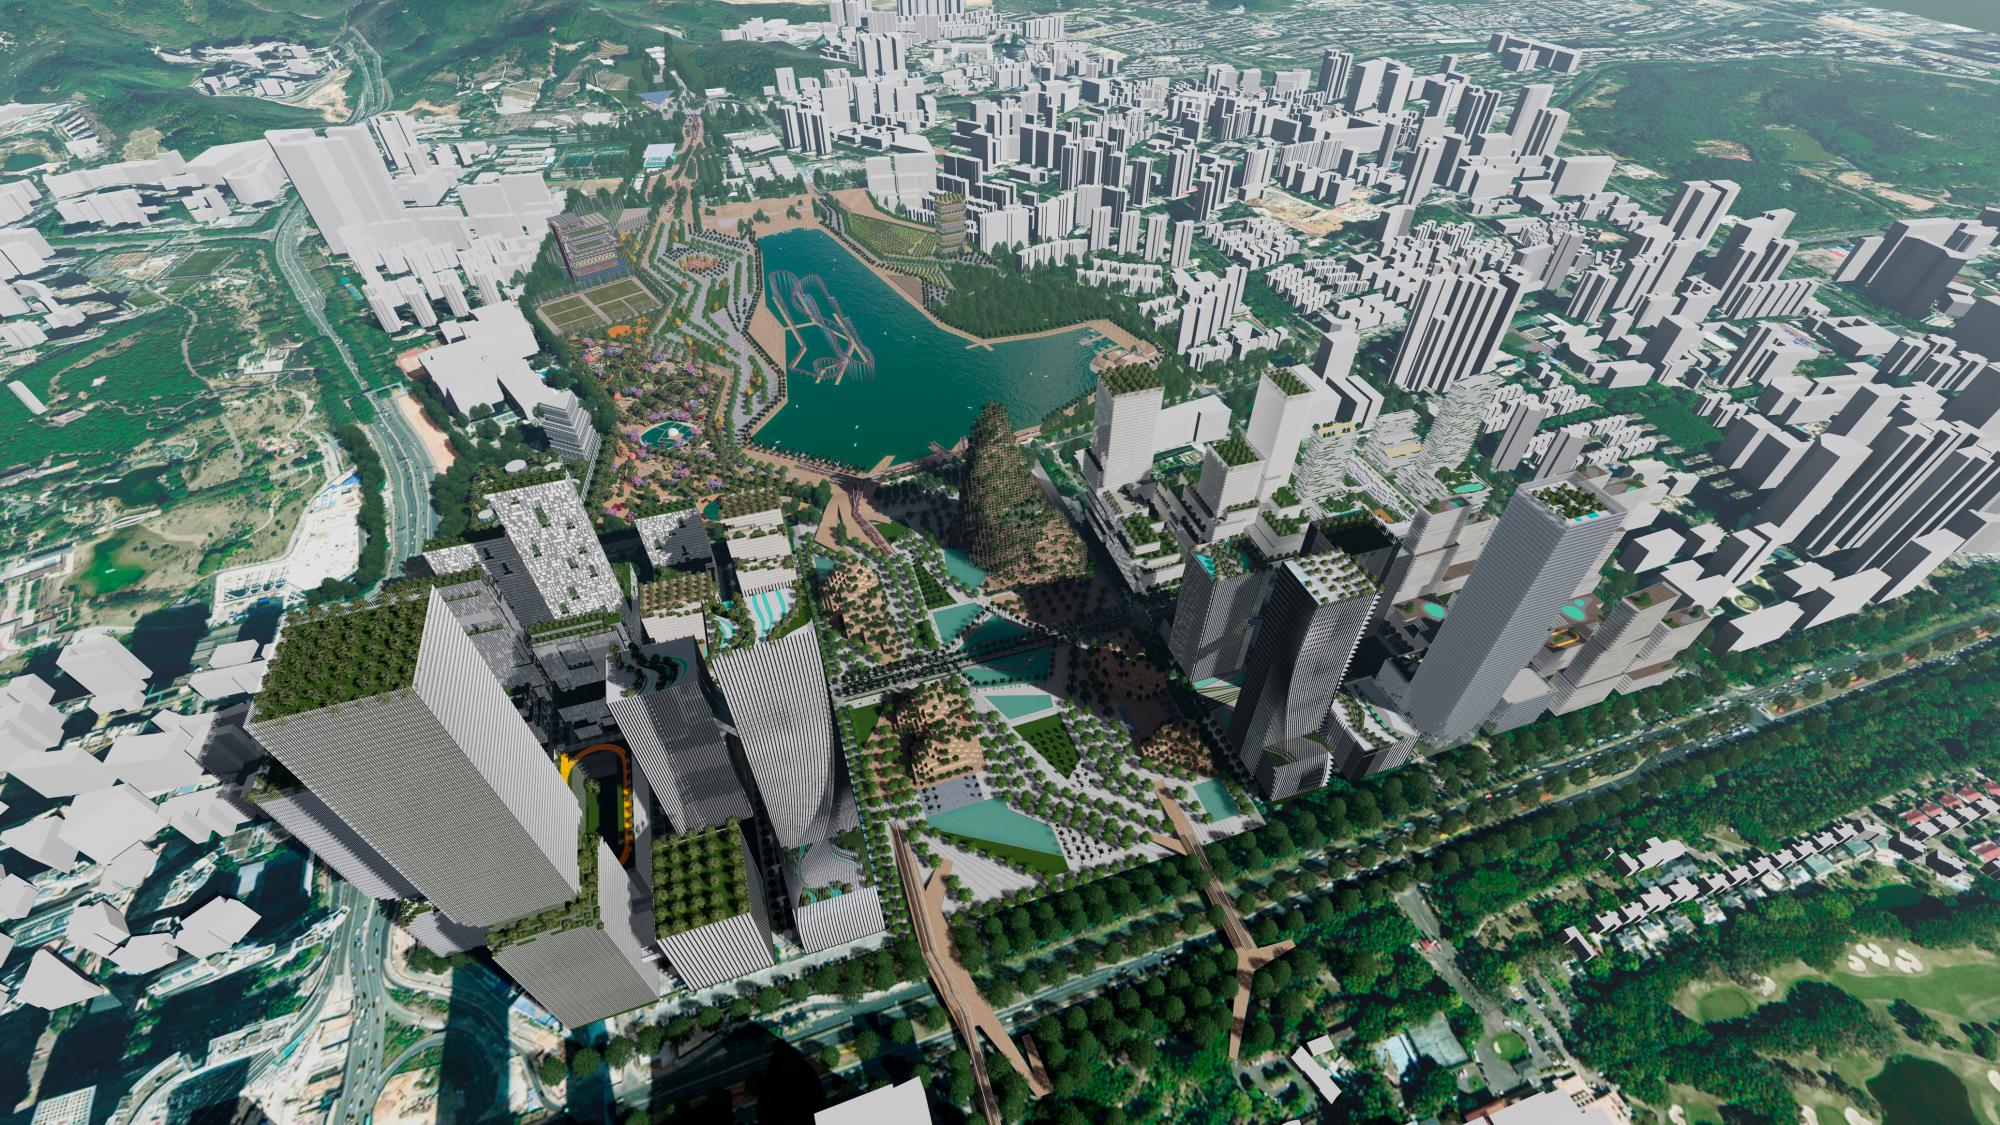 El nuevo distrito de Shenzhen, la “San Francisco china”, comenzará a construirse en 2020.